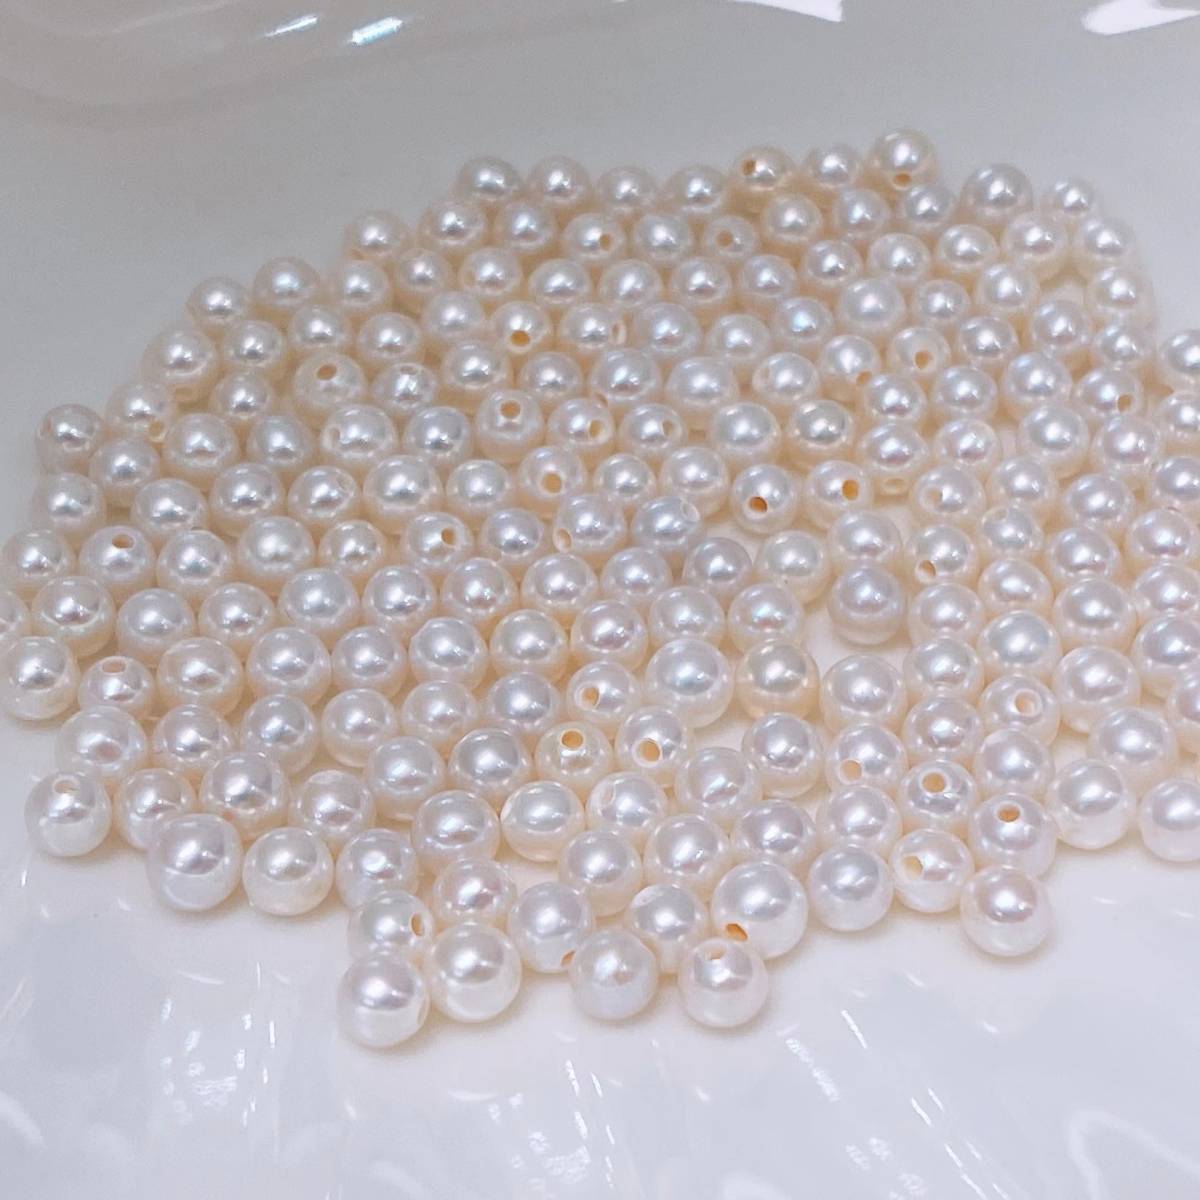 10個セット 天然本真珠 淡水パール 卸売り 4-4.5mm 淡水珍珠 超綺麗 裸 真珠 DIY 白 人気の真珠 超レア ジュエリー zz05_画像7